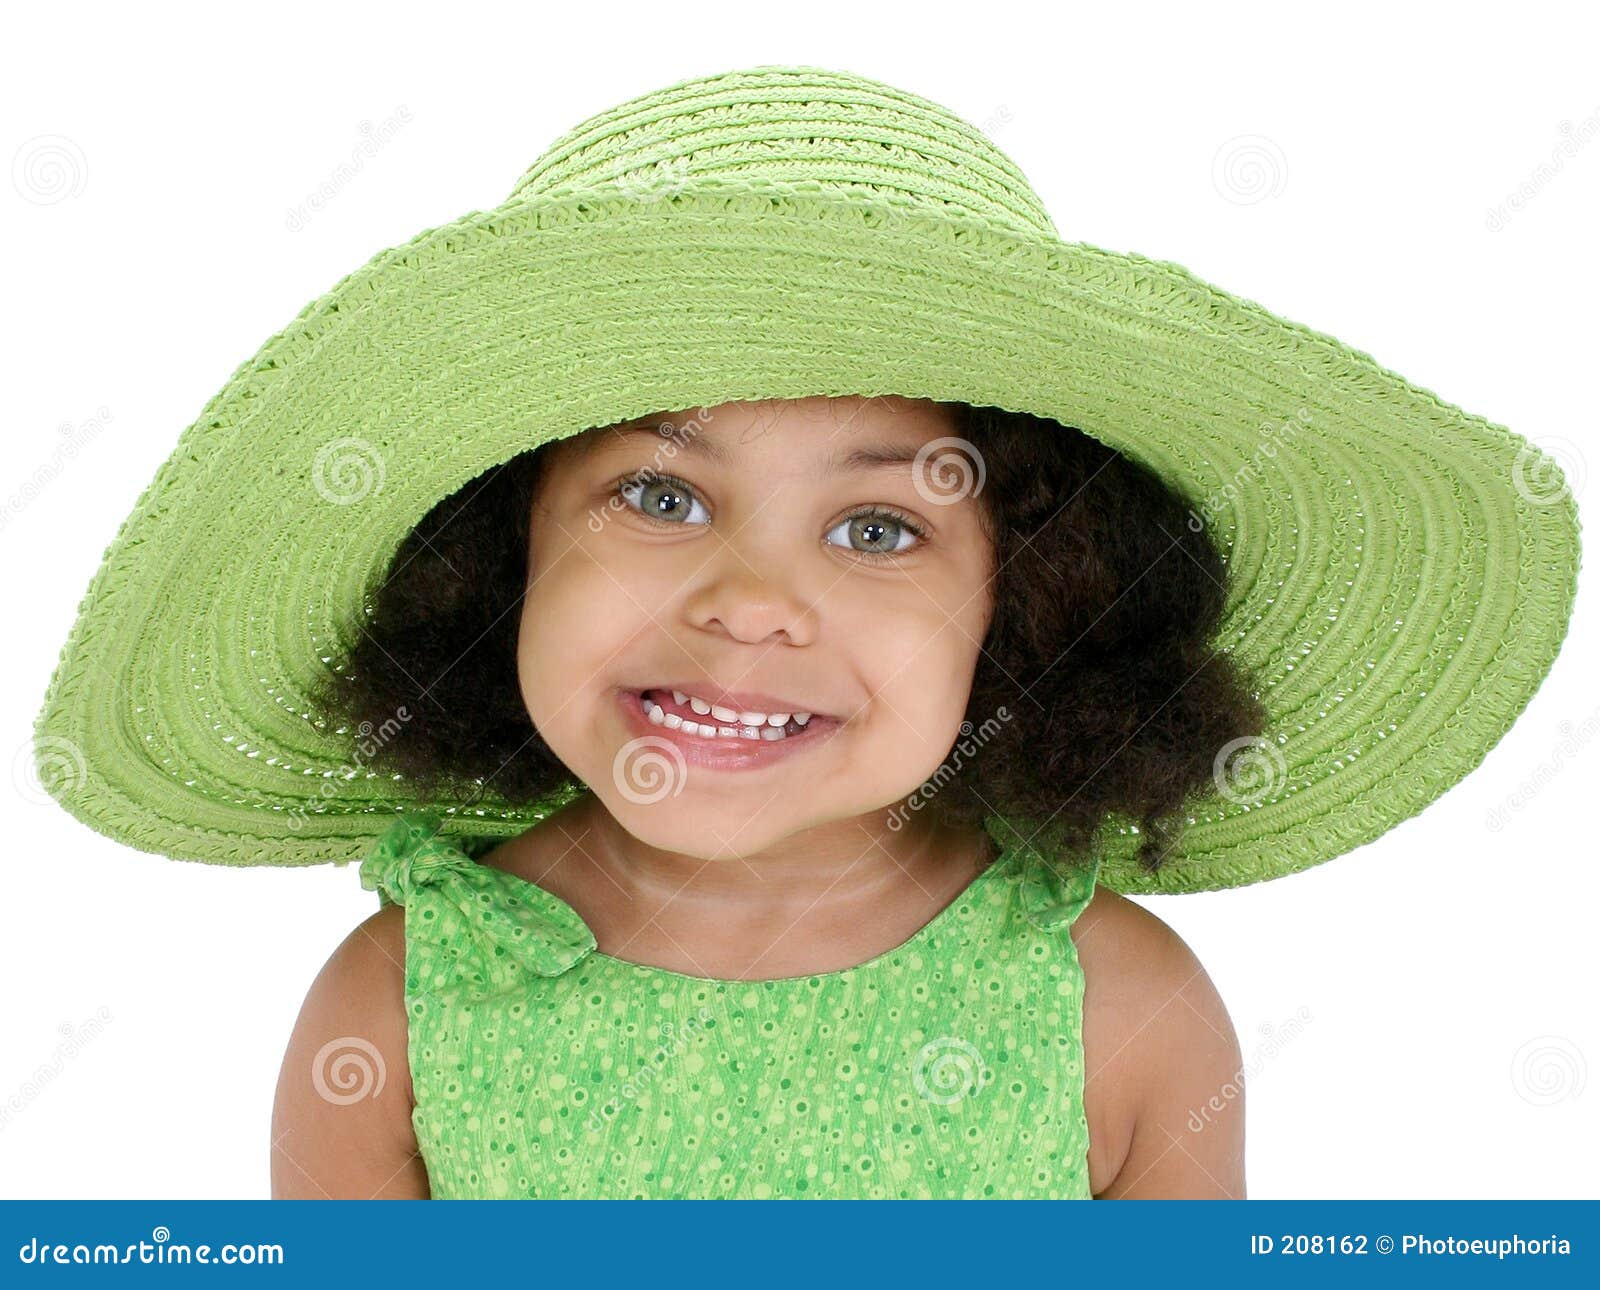 beautiful-three-year-old-girl-big-green-hat-208162.jpg